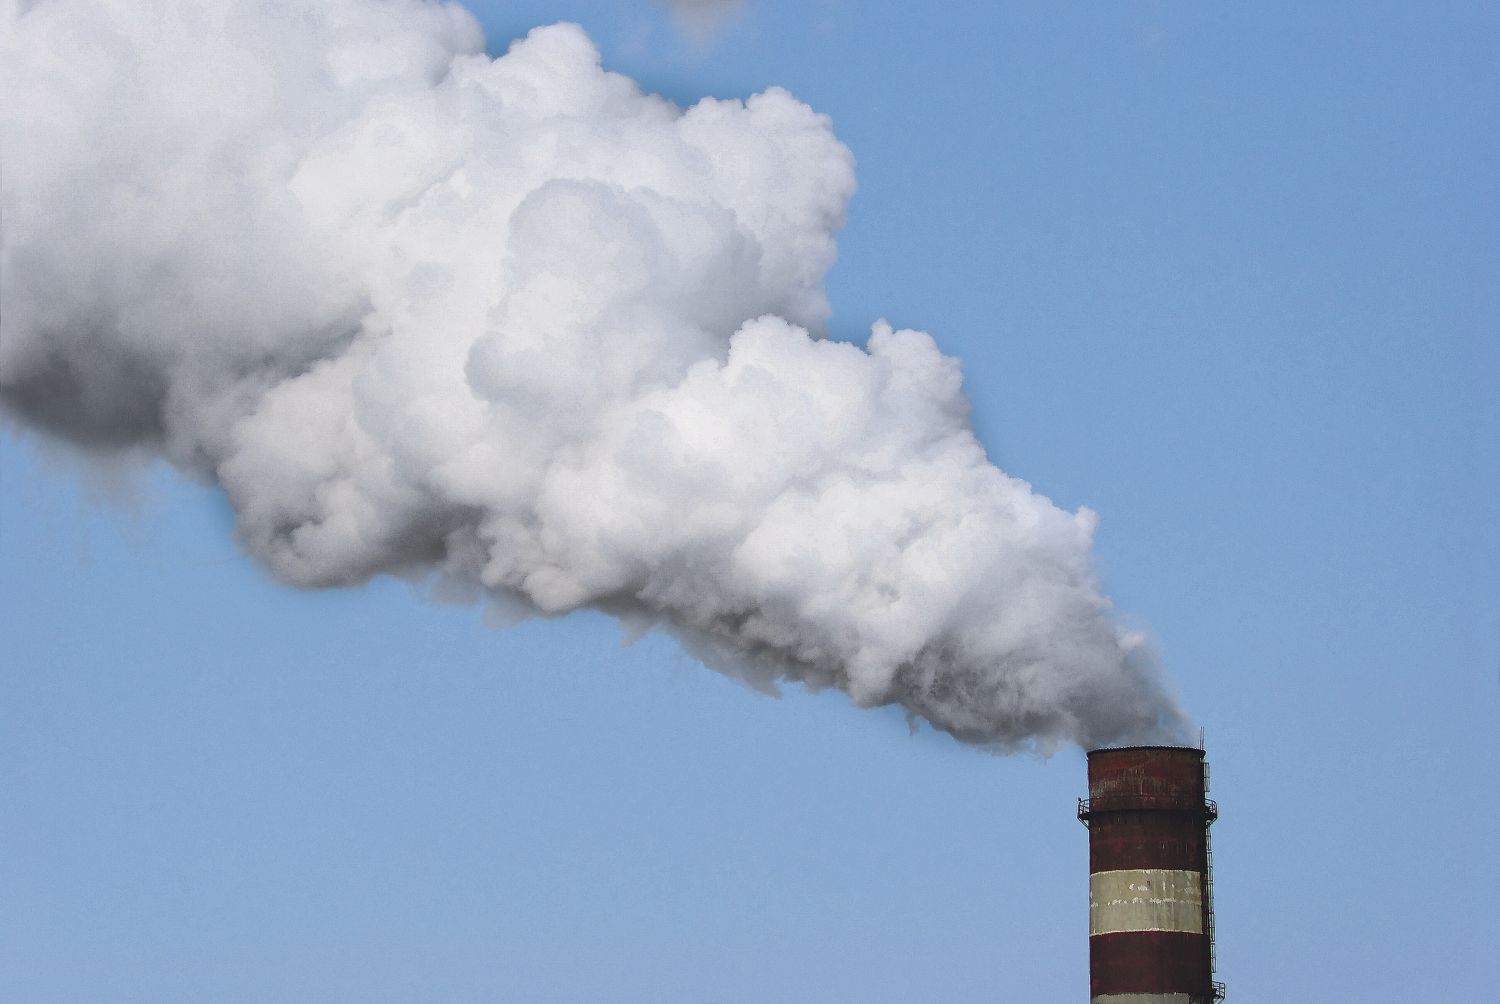  Ein rauchender Schornstein: Fossile Brennstoffe als Back-up für das Stromnetz erscheinen vielen als schlaue Strategie